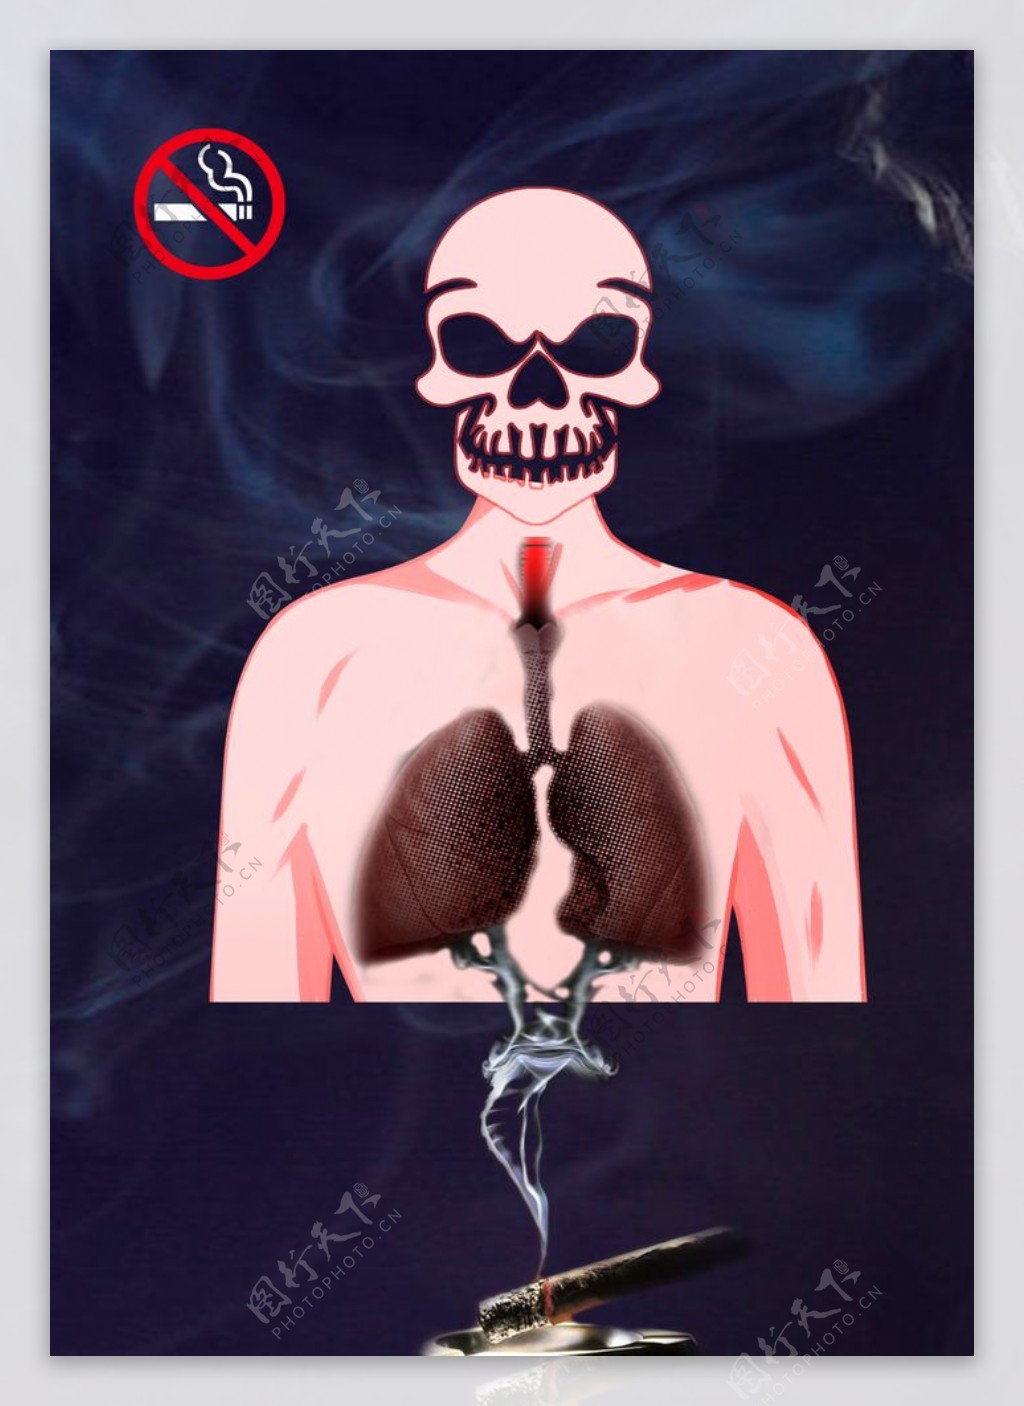 禁止吸烟禁烟海报严禁吸烟图片